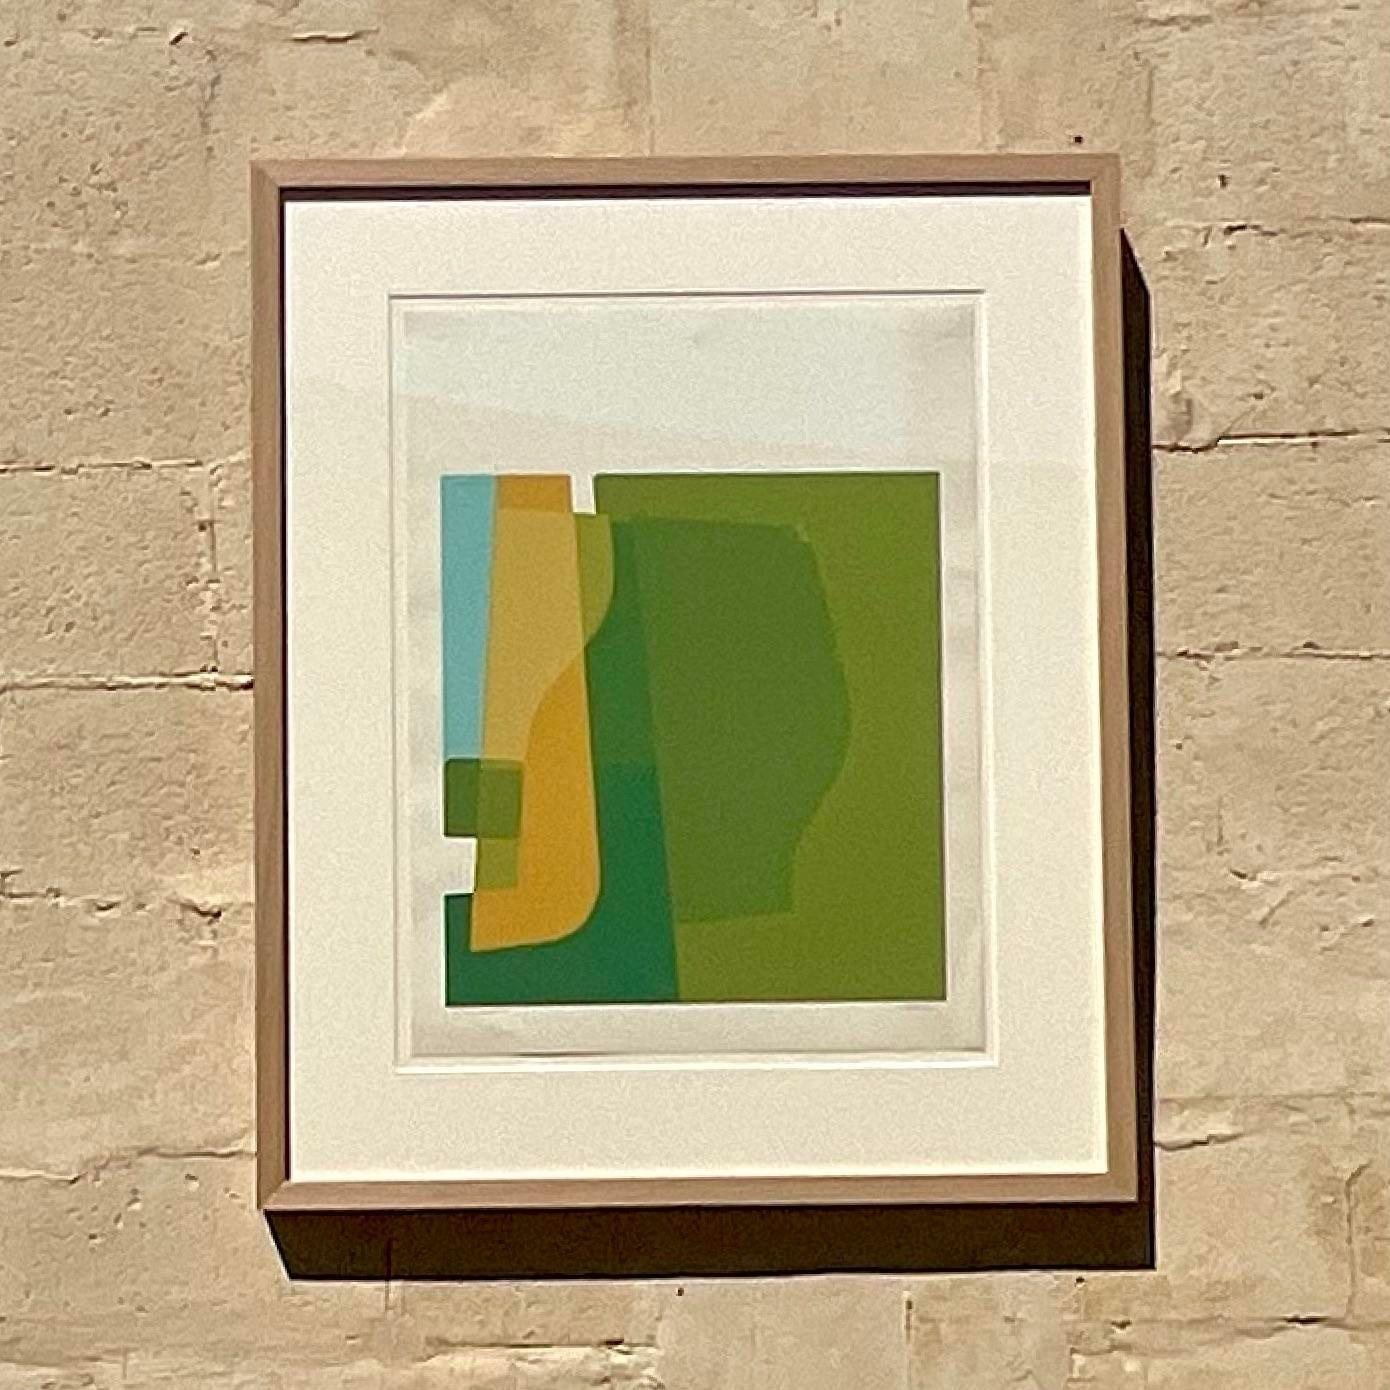 Lithographie abstraite Vintage de diverses formes courbes dans des tons de vert différenciés. Les formes s'associent pour créer une touche de couleur minimaliste de bon goût. Signé par l'artiste. Acquis auprès d'une succession de Palm Beach.